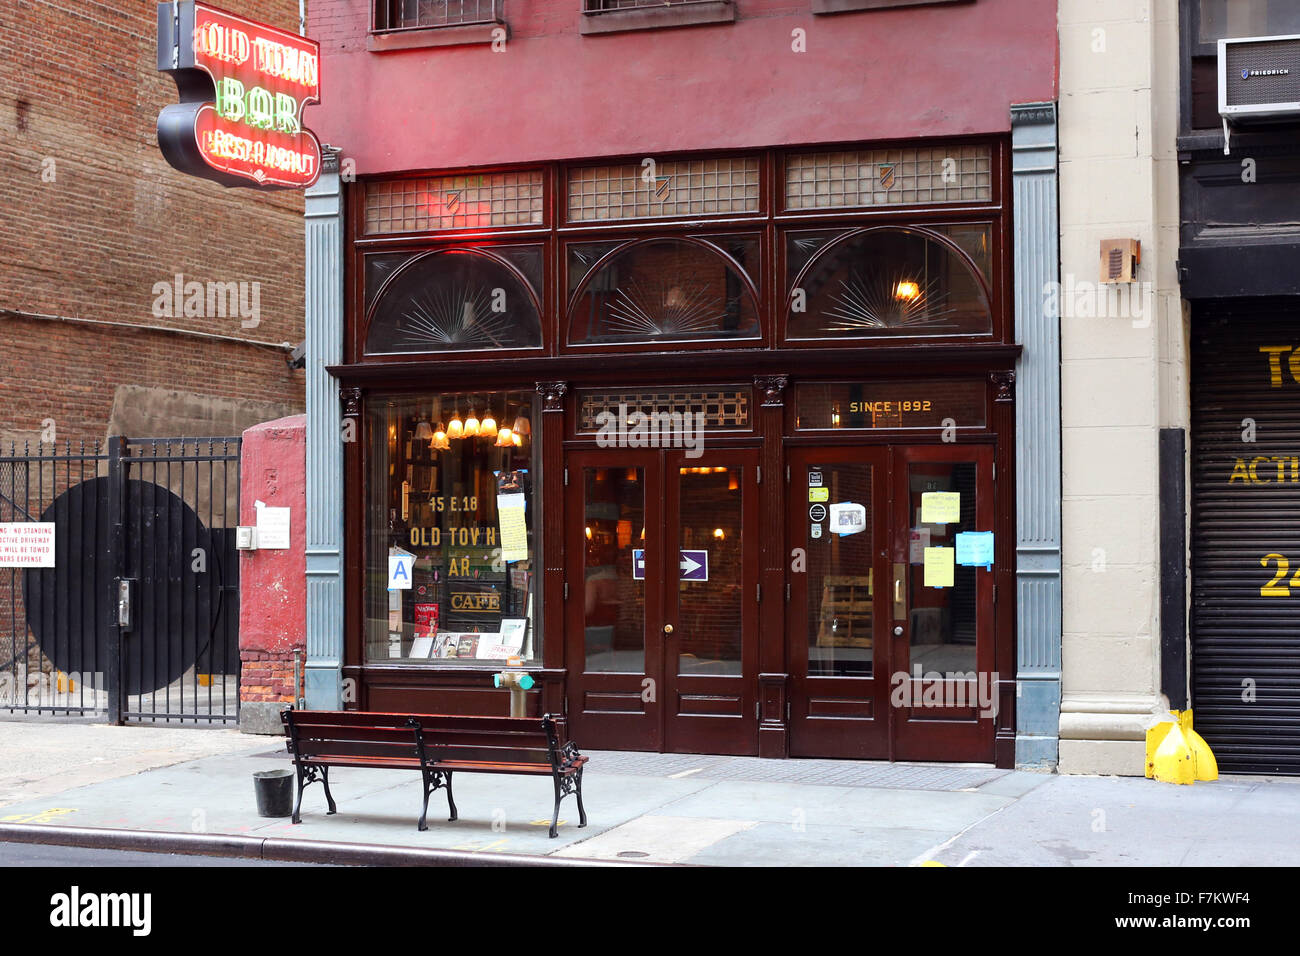 Old Town Bar e ristorante, 45 E.18th St, New York. esterno alla vetrina di un bar e di un ristorante nel quartiere Gramercy di Manhattan. Foto Stock